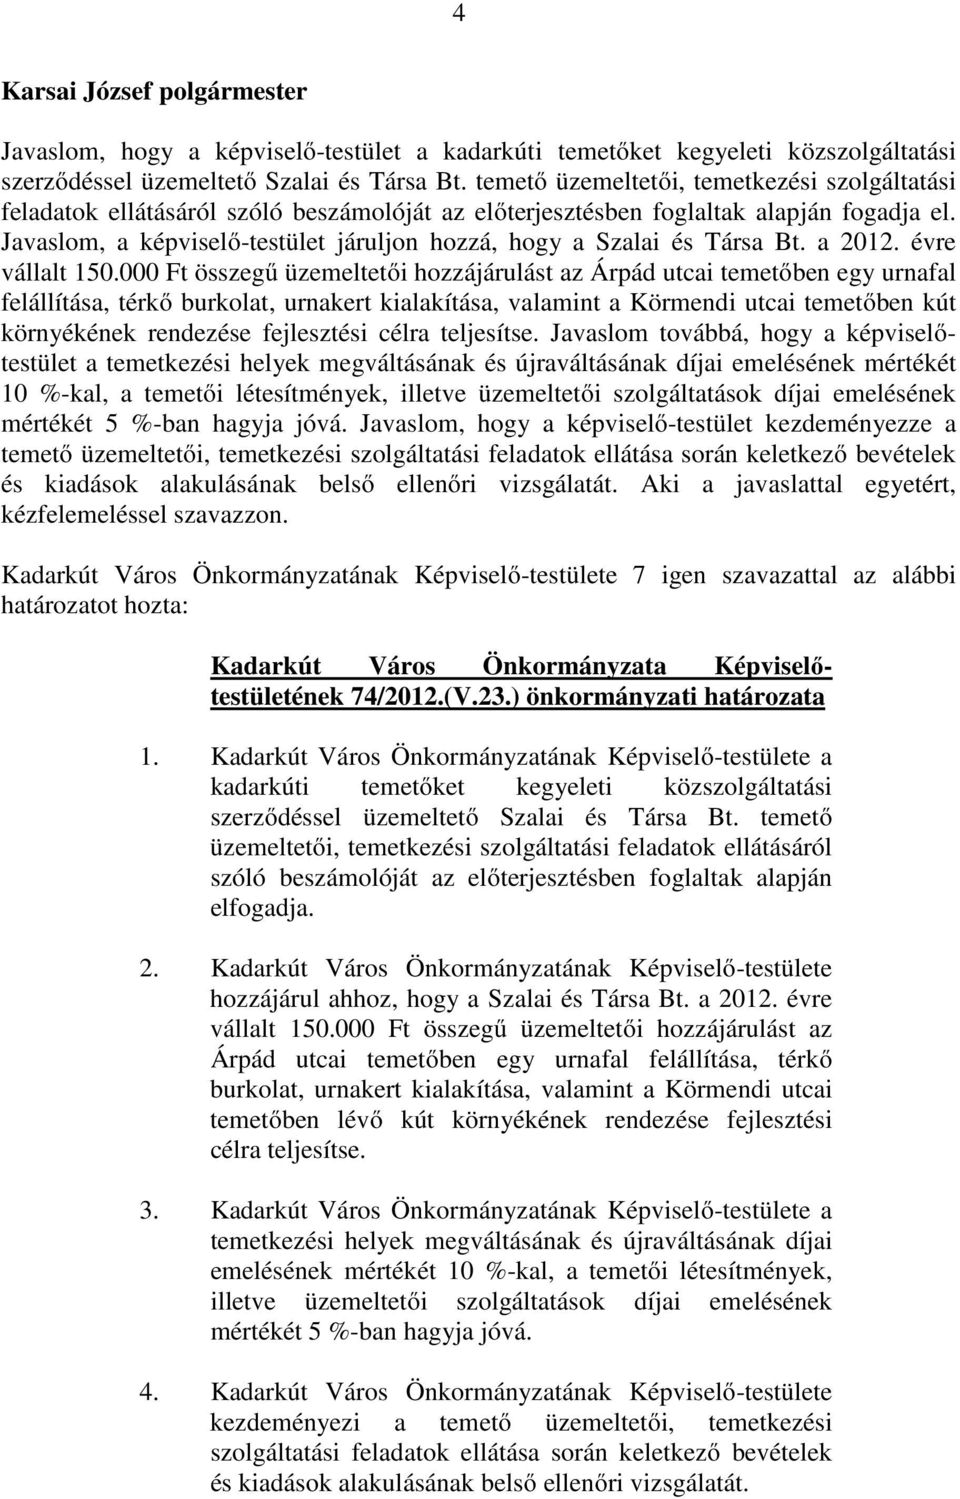 Javaslom, a képviselı-testület járuljon hozzá, hogy a Szalai és Társa Bt. a 2012. évre vállalt 150.